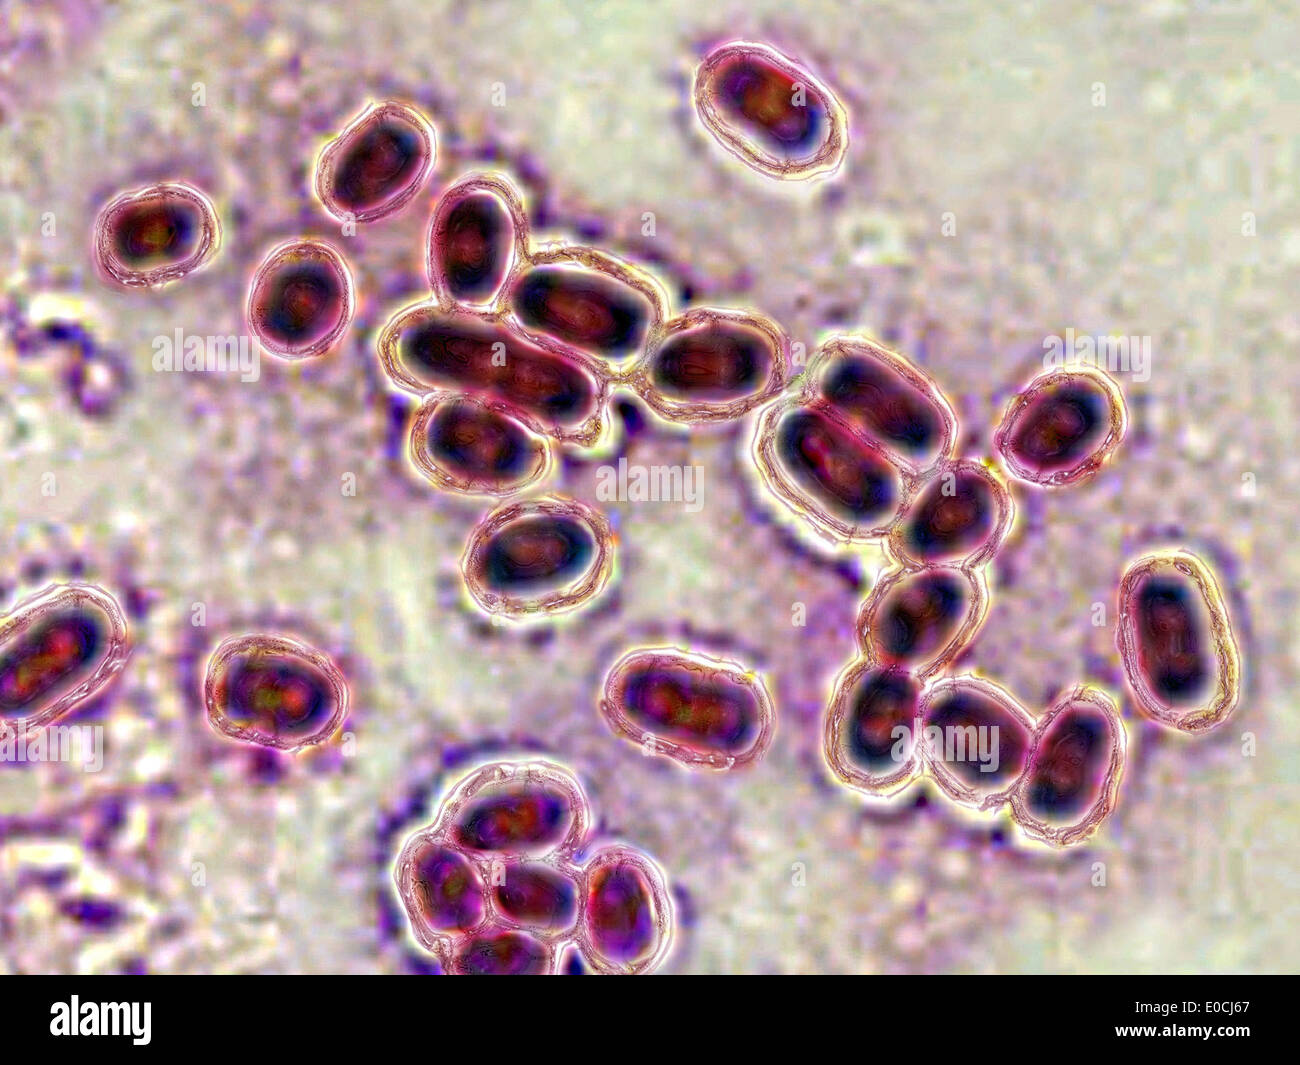 Streptococcus pneumoniae Stock Photo